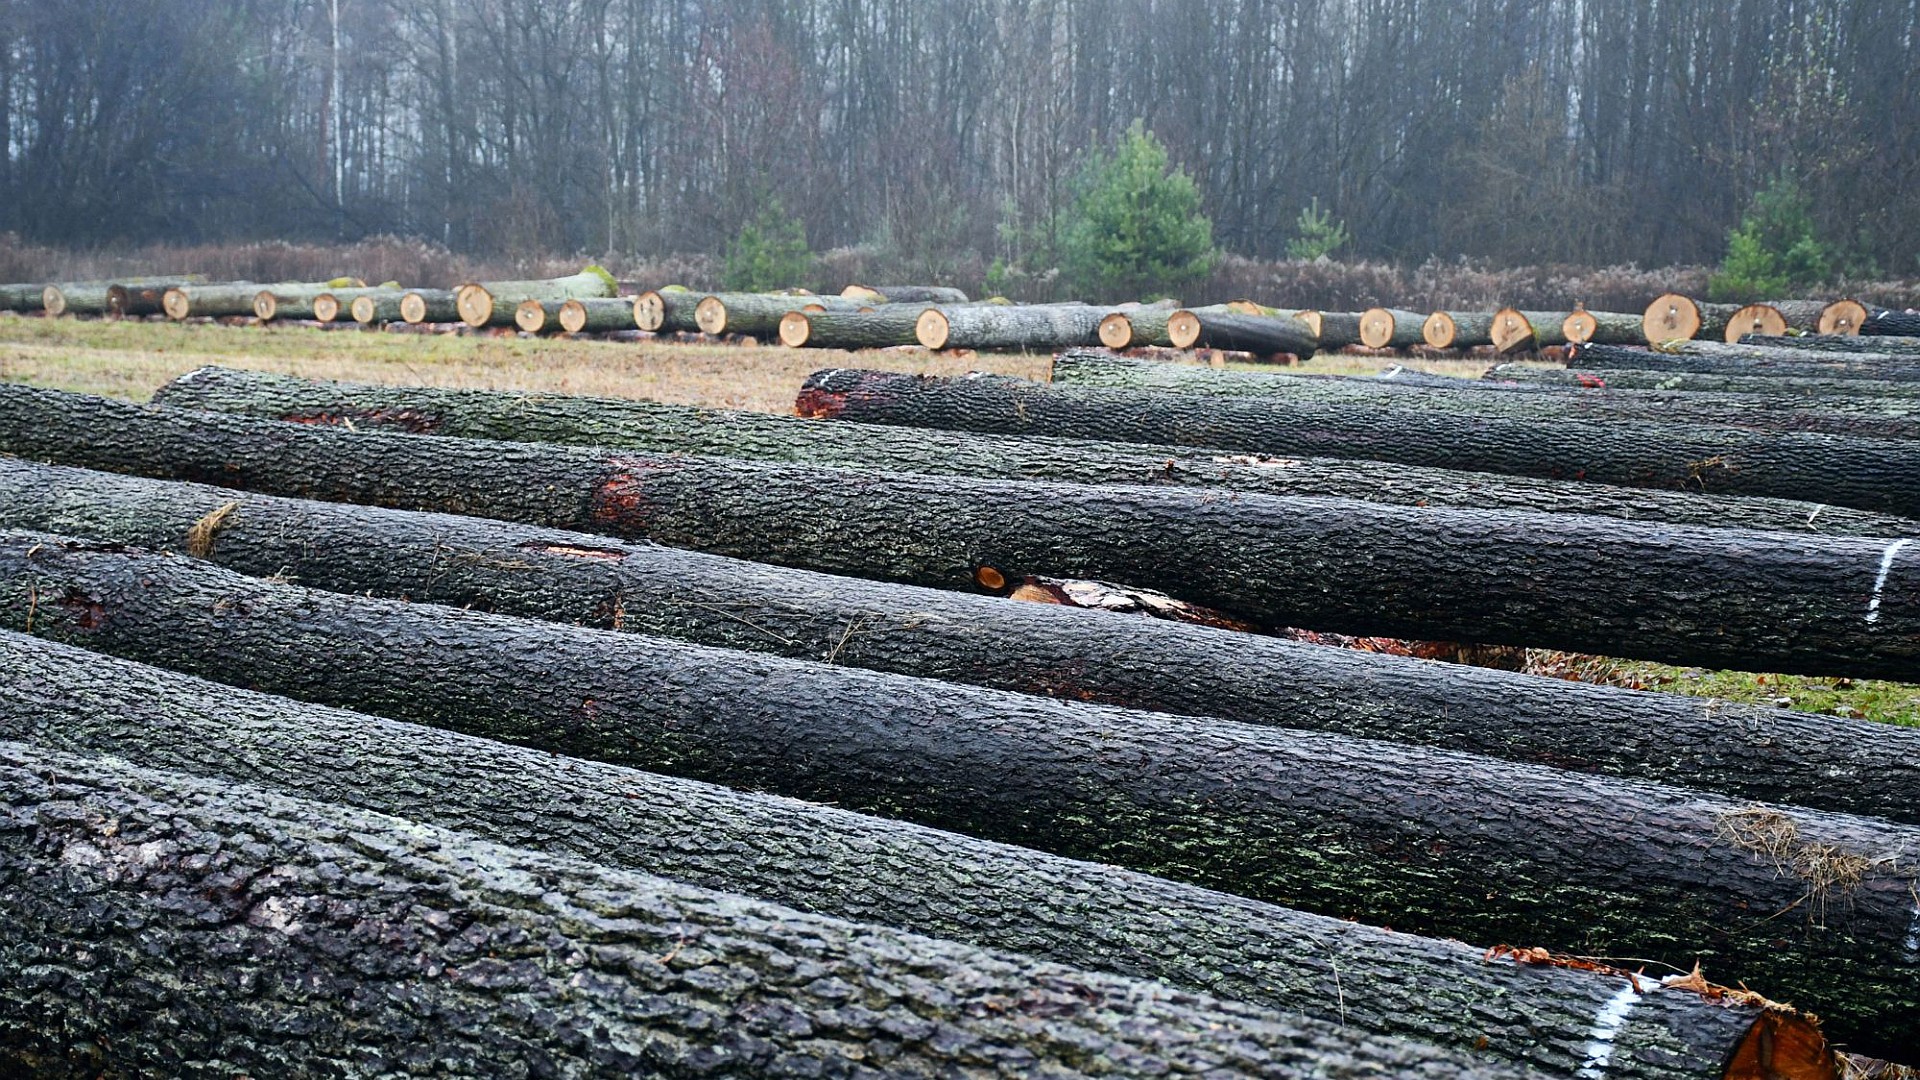 VIII Regionalna Submisja Drewna Szczególnego w RDLP w Radomiu